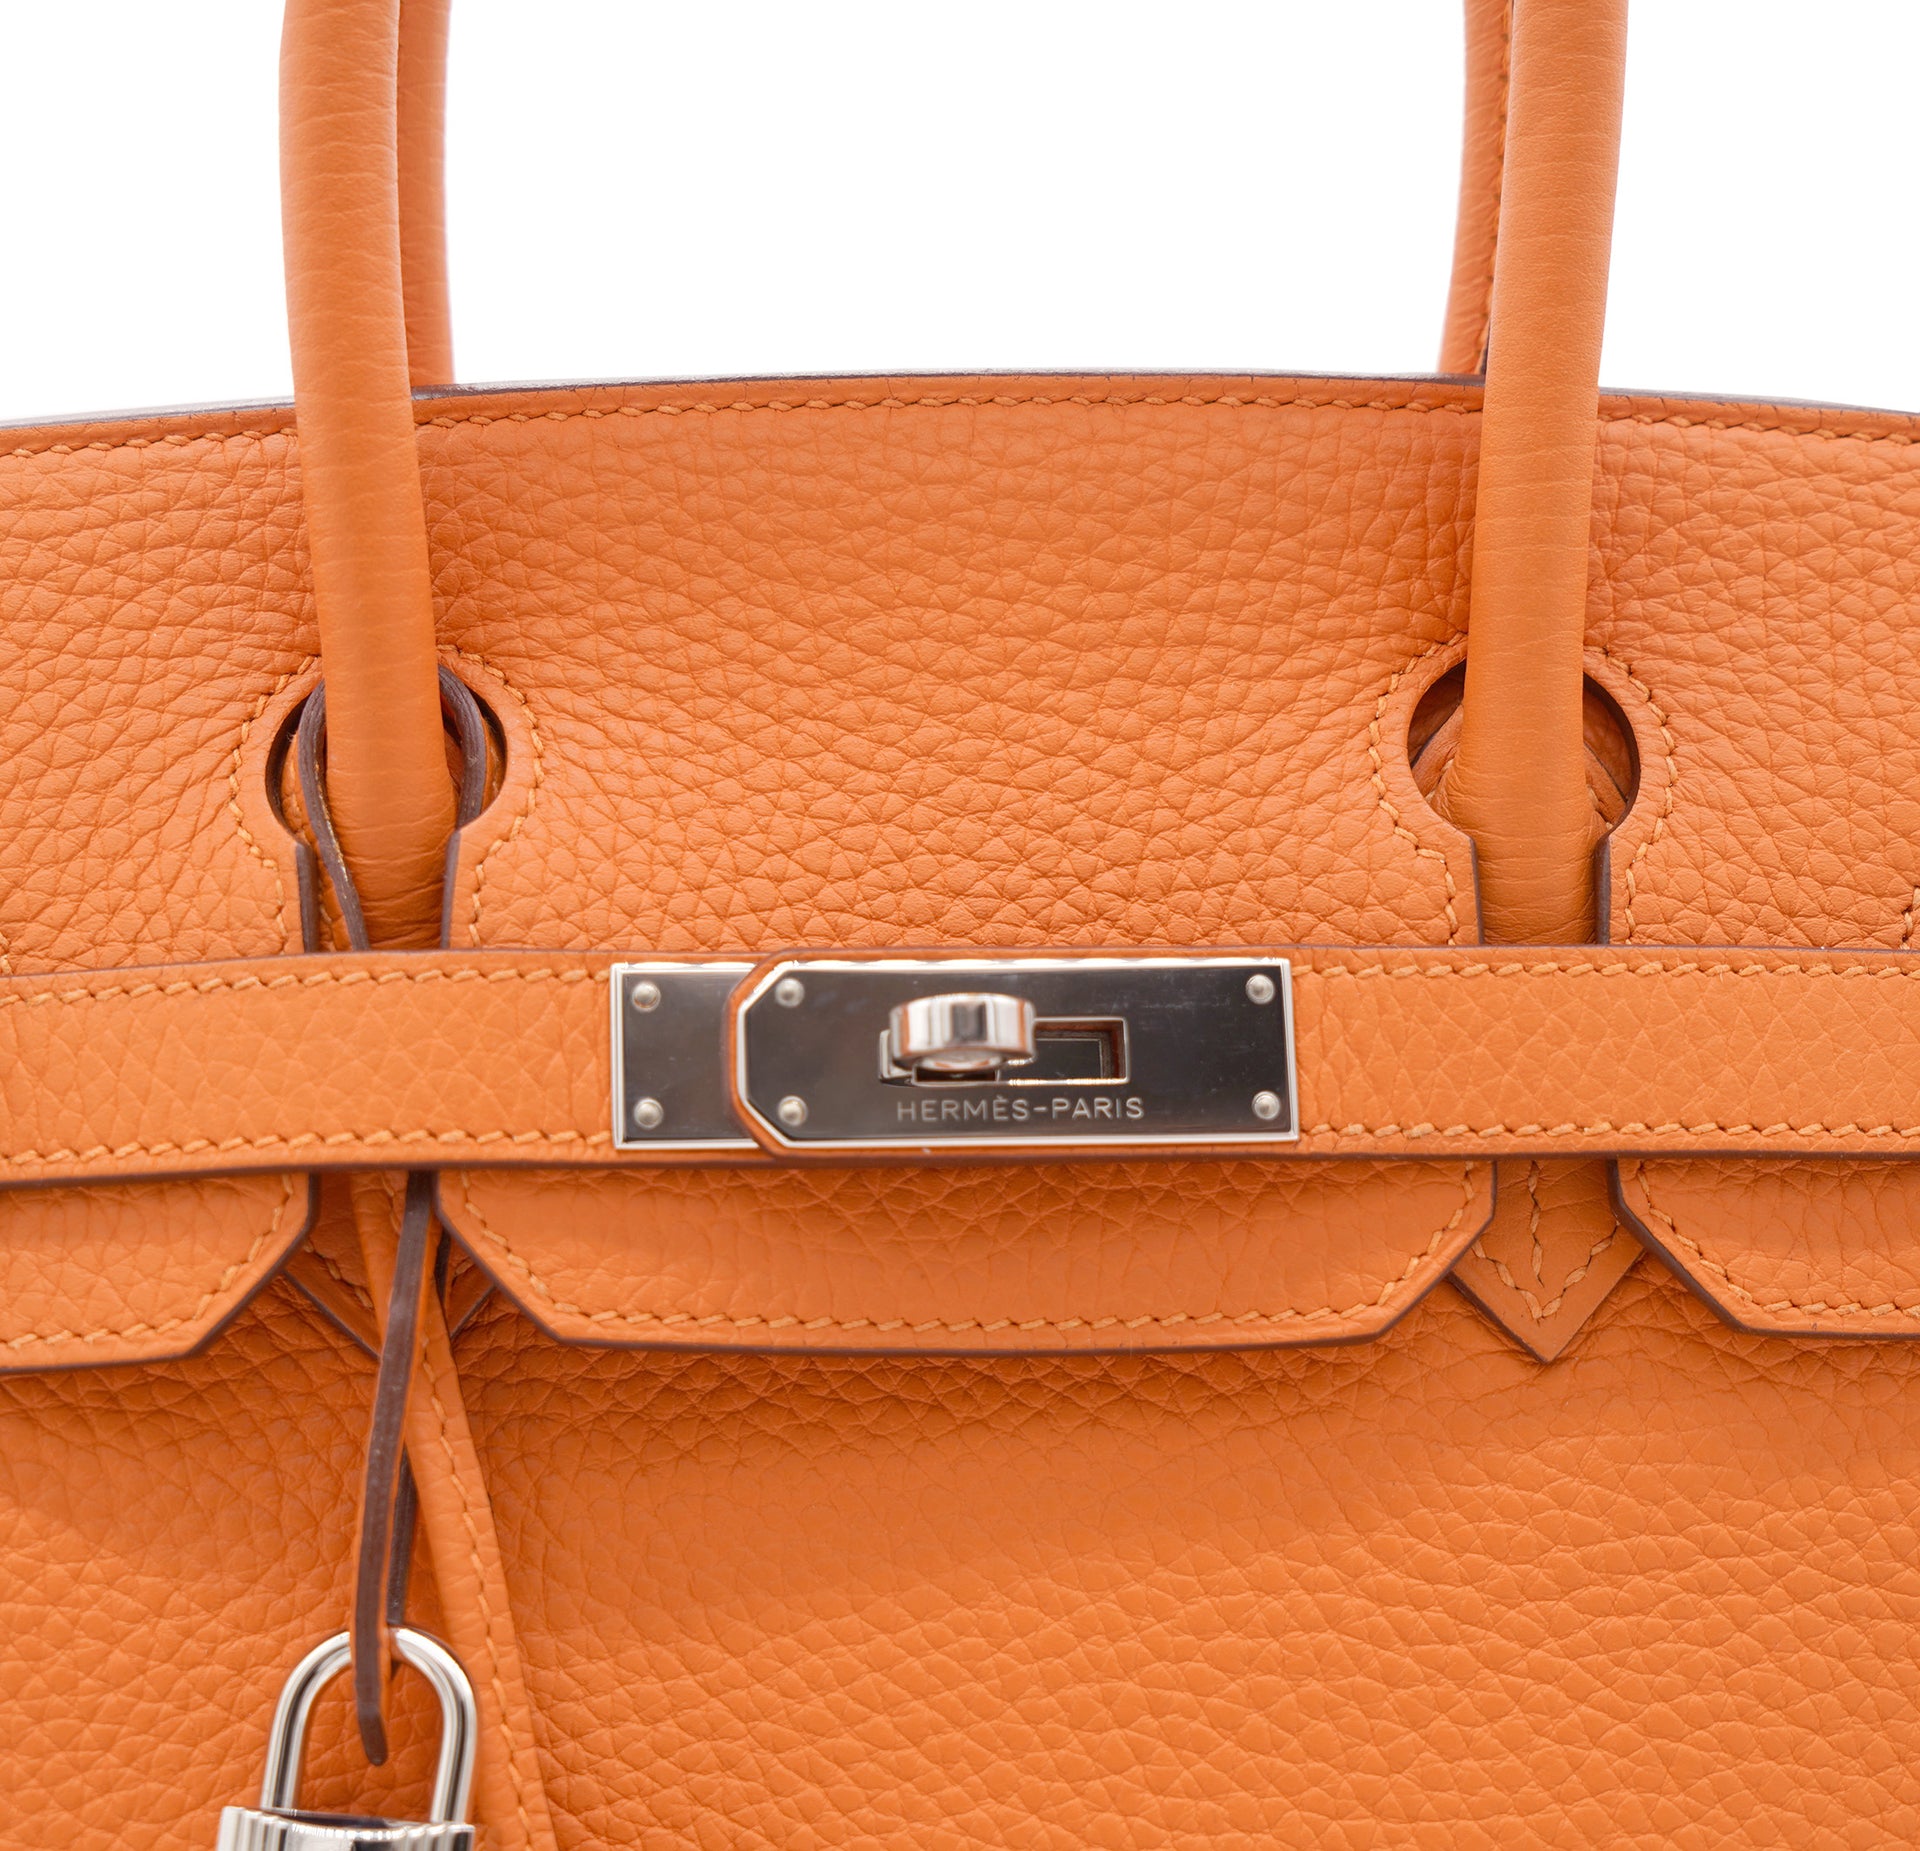 Hermès Vintage - Taurillon Clemence Birkin 30 - Orange - Leather Handbag -  Avvenice